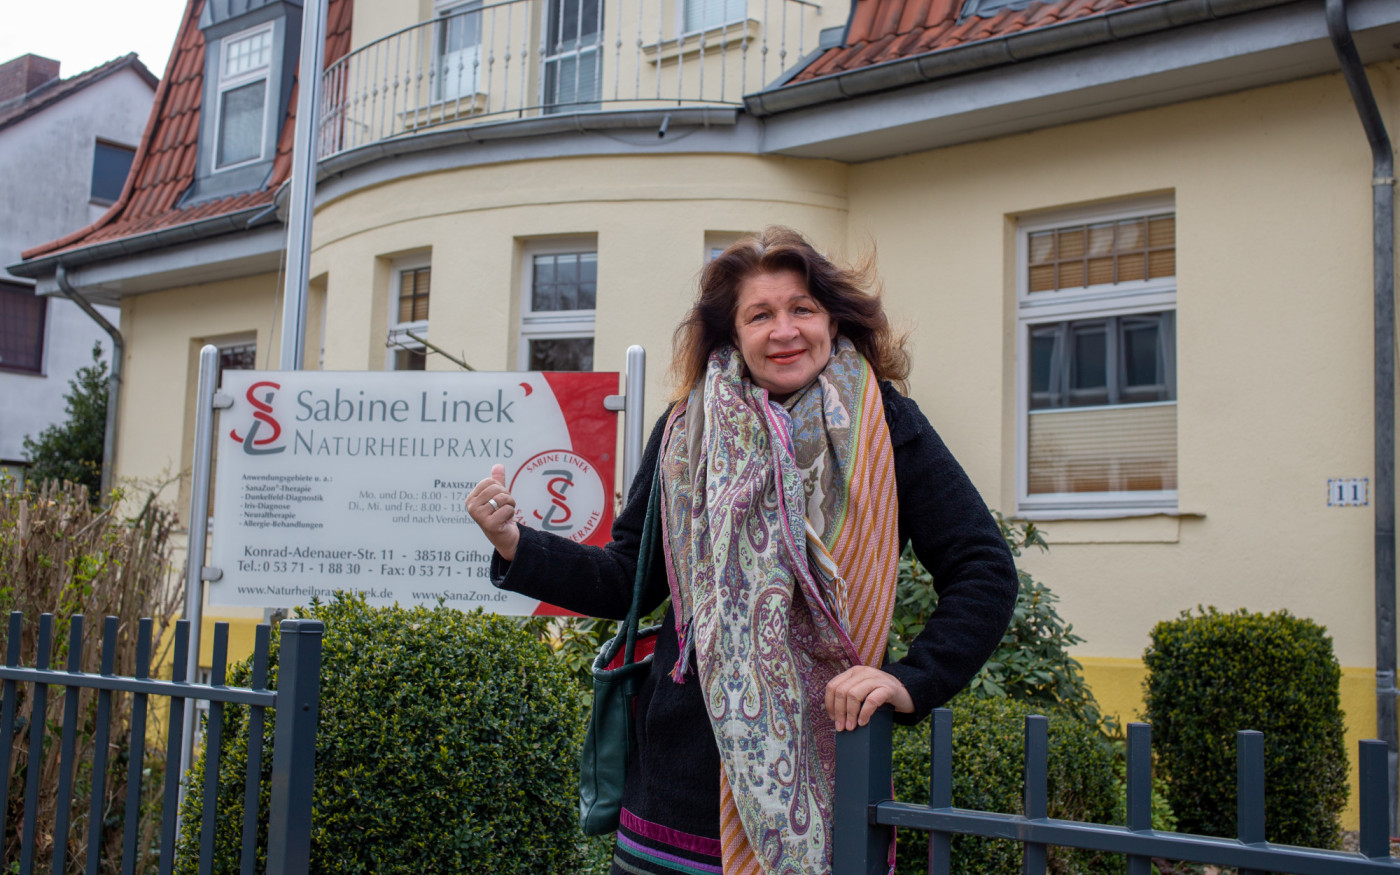 Naturheilpraxis Sabine Linek hat unter verschärften Schutzmaßnahmen weiterhin geöffnet